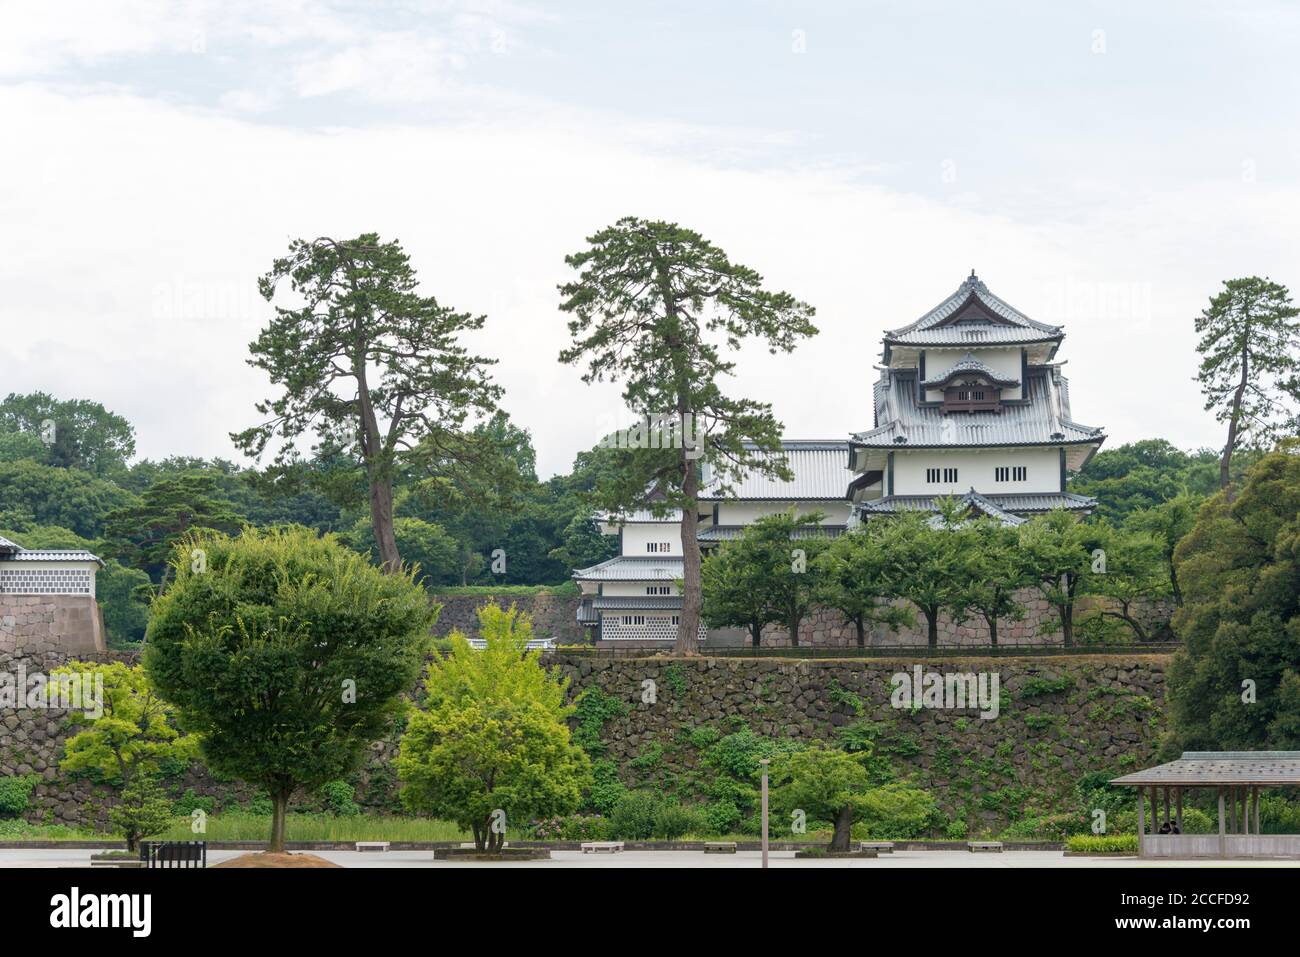 Kanazawa, Japan - Kanazawa Castle Park in Kanazawa, Ishikawa, Japan. a famous historic site. Stock Photo